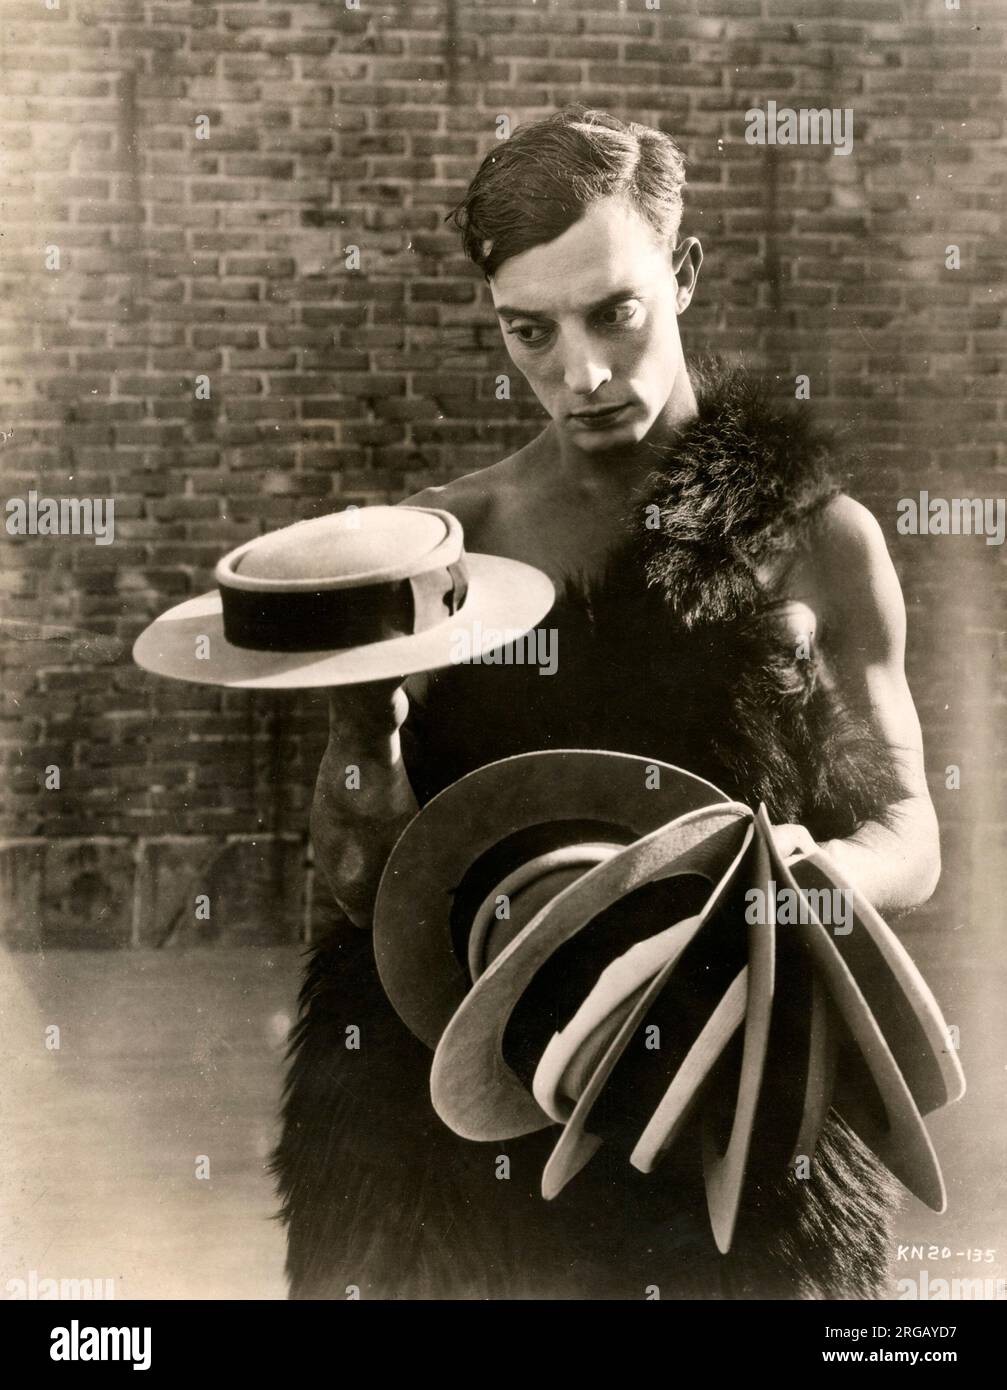 Buster Keaton nel film muto tre età, vintage premere fotografia Foto Stock